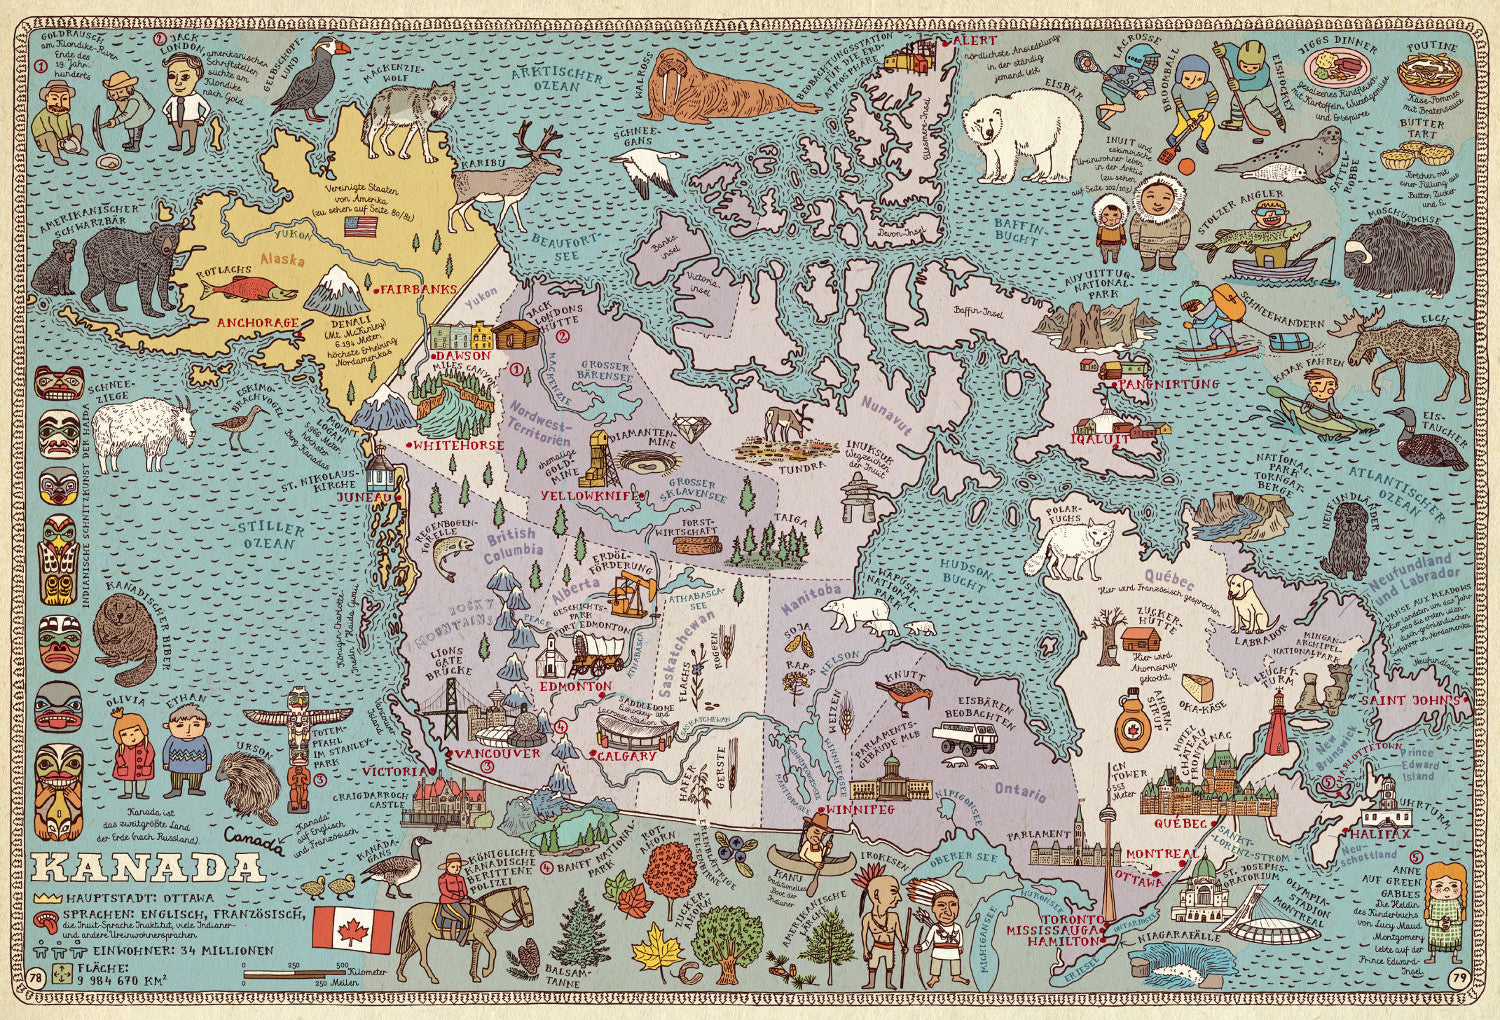 Alle Welt - Das Landkartenbuch (Abermals erweiterte Neuausgabe)